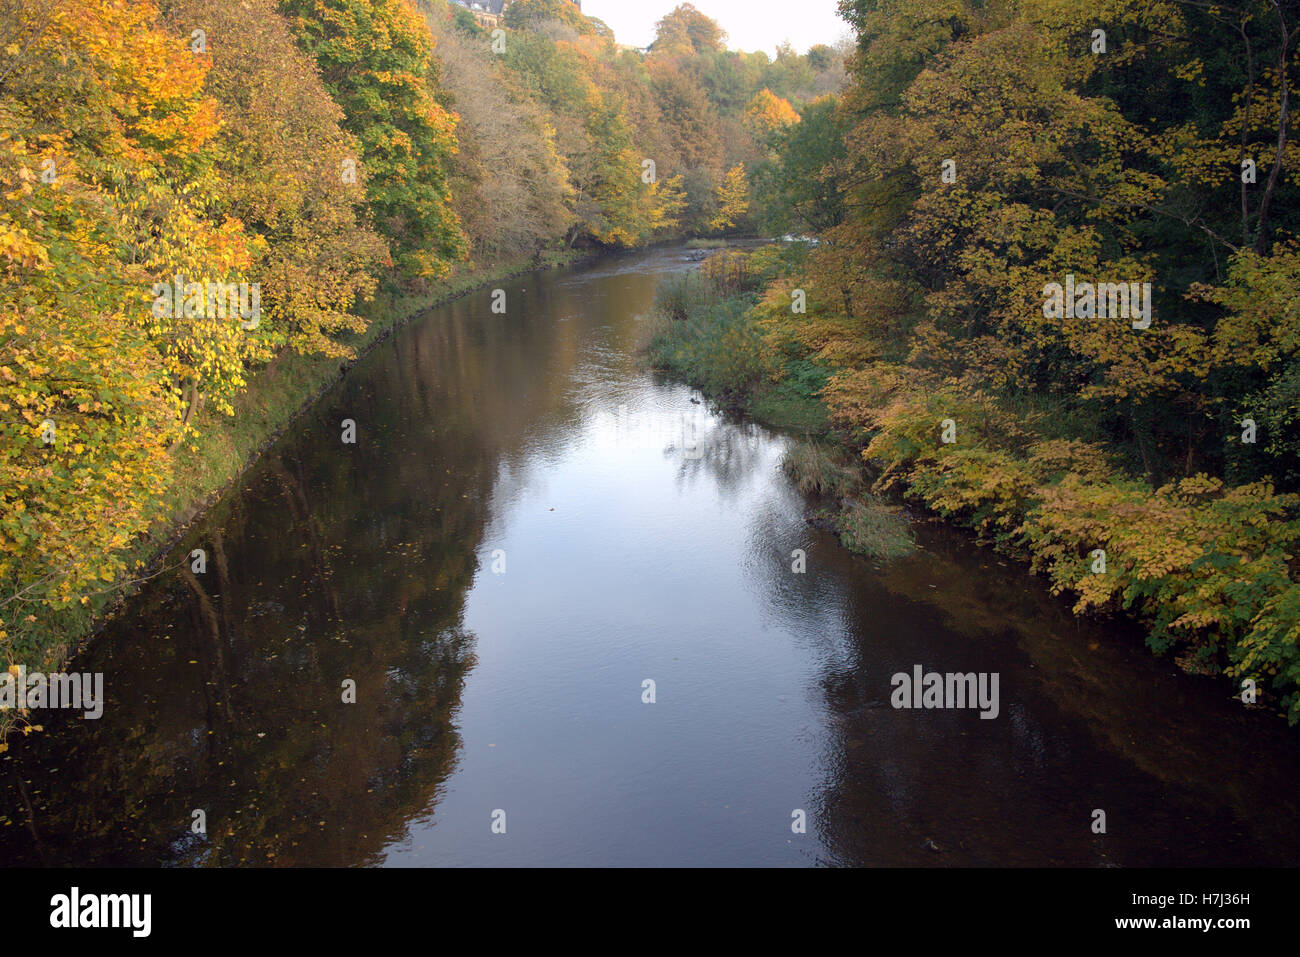 Rivière Kelvin sur une journée ensoleillée près de Queen Margaret Drive pont dans le parc de Kelvingrove, Glasgow, Ecosse, Royaume-Uni. Banque D'Images